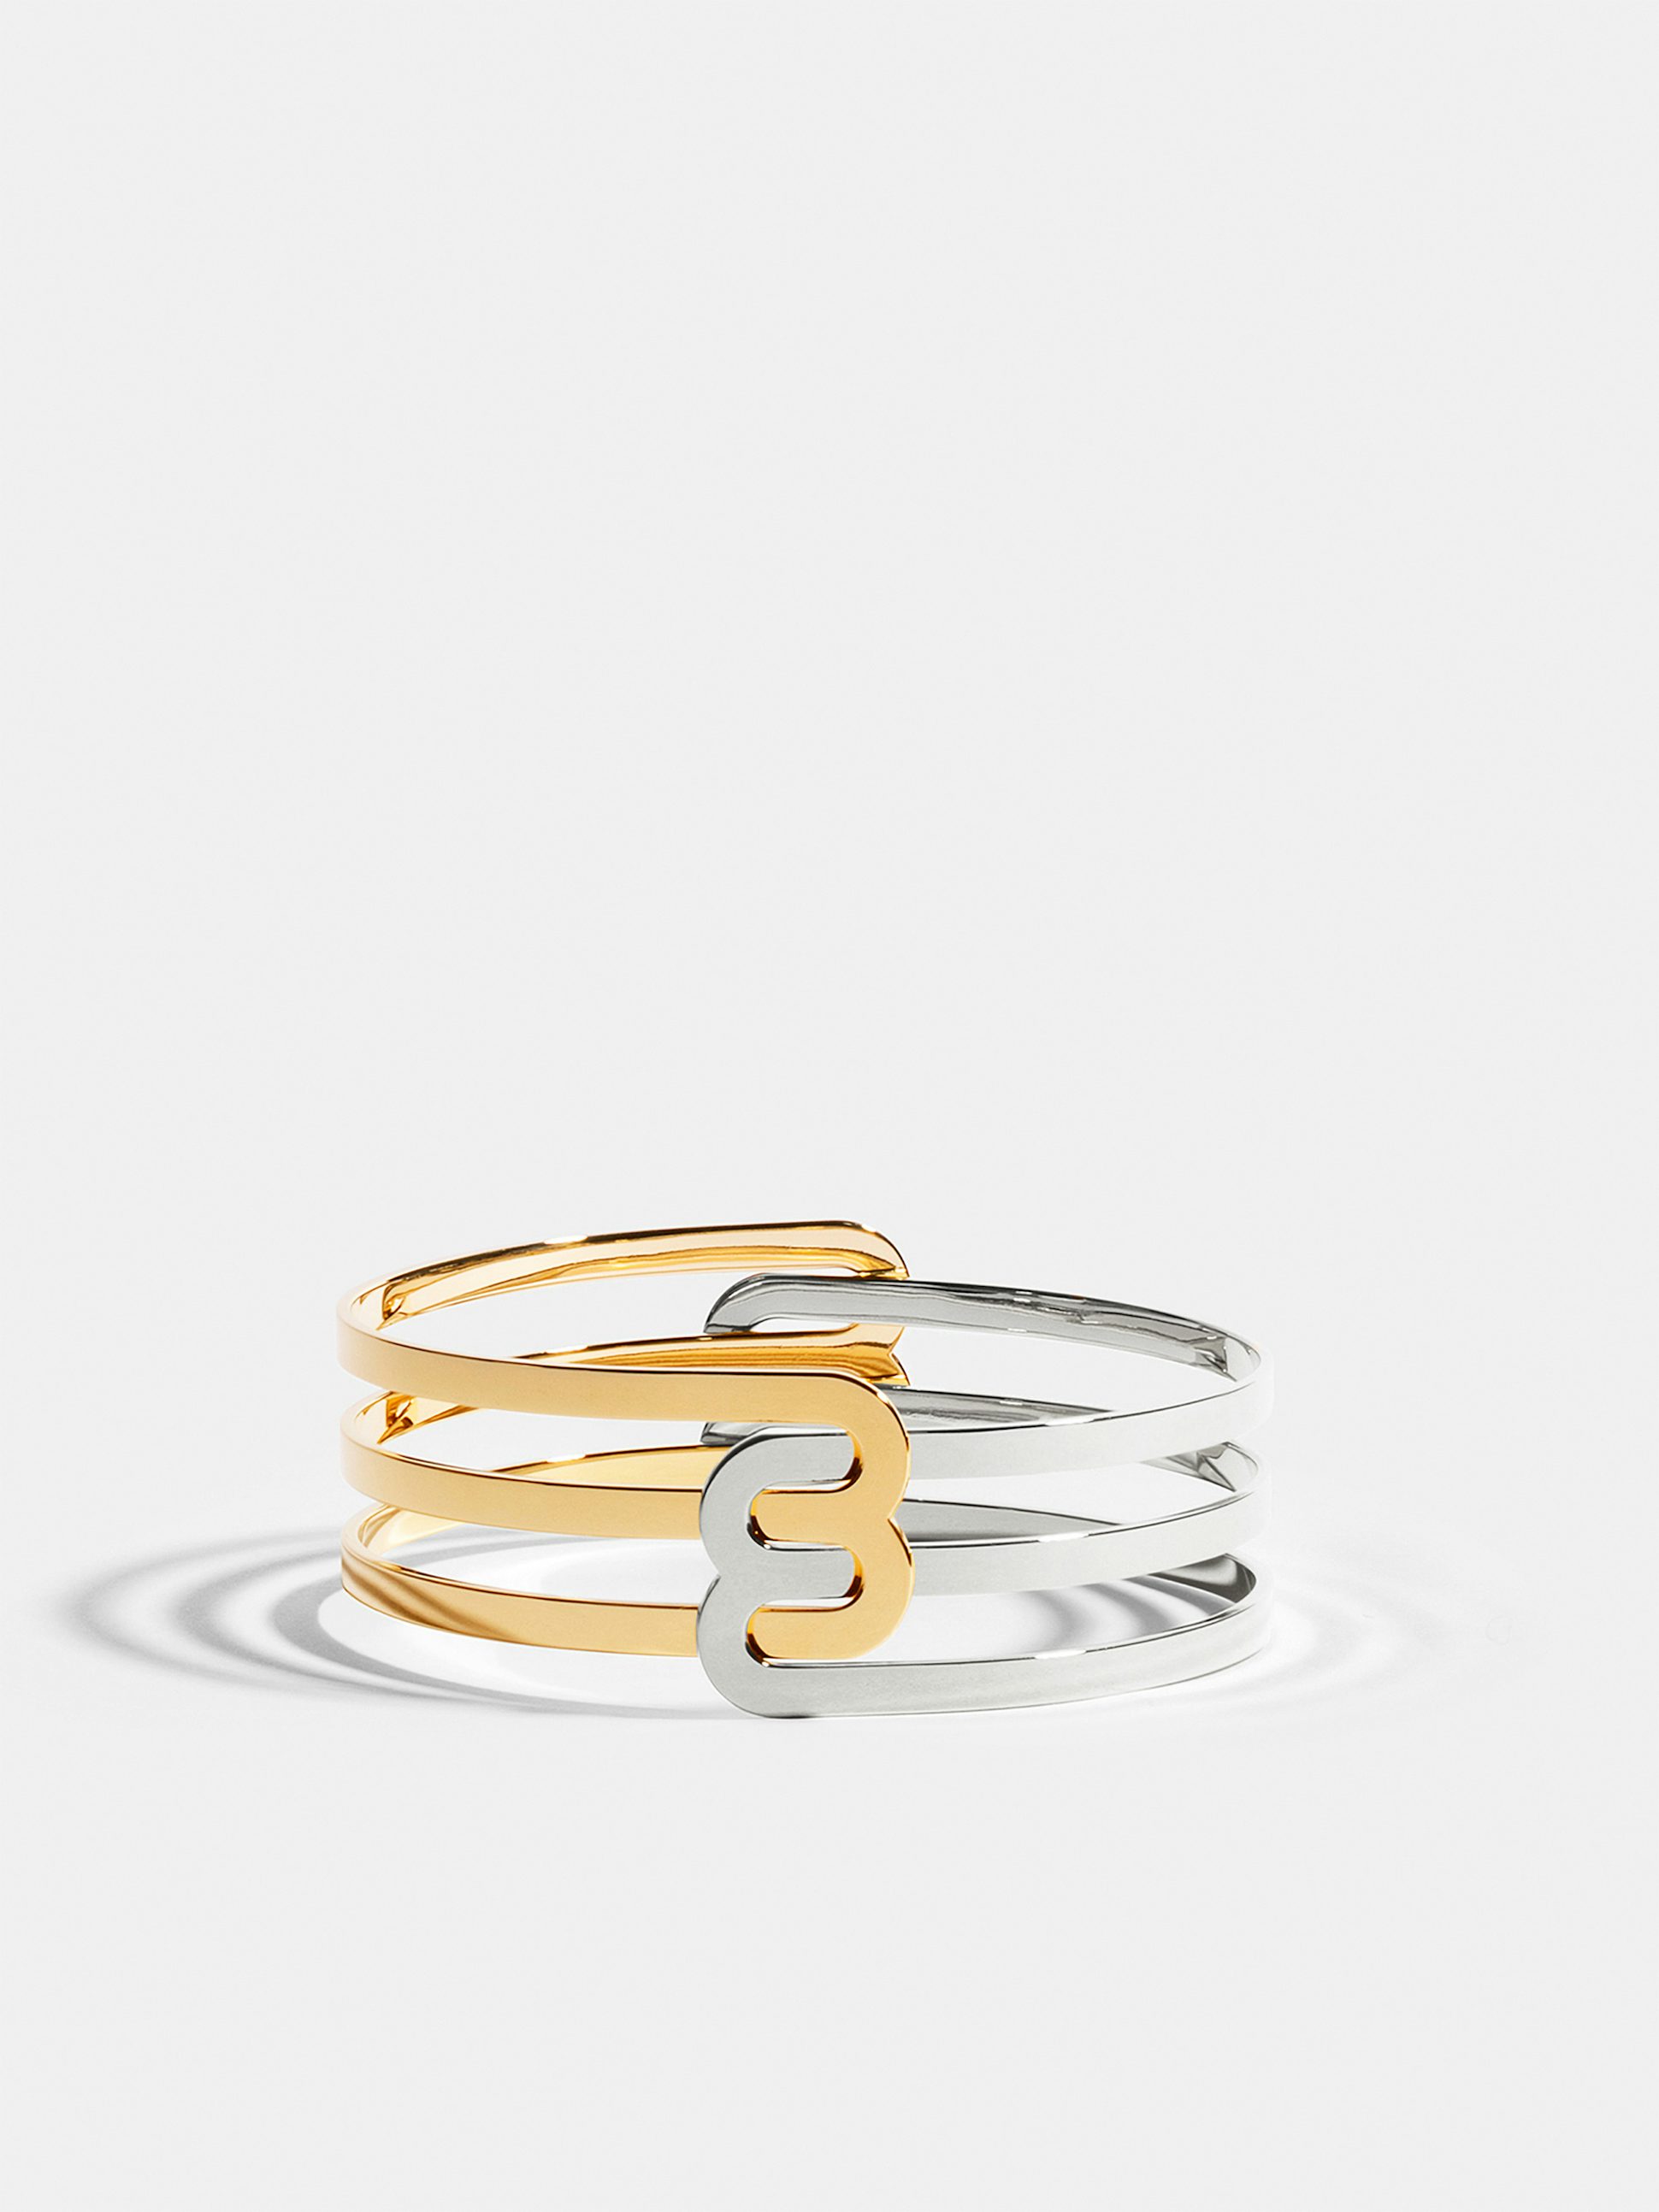 Bracelet Étreintes en Or jaune et blanc éthique 18 carats certifié Fairmined composé de deux demi-bracelets doubles finition poli-brillant.